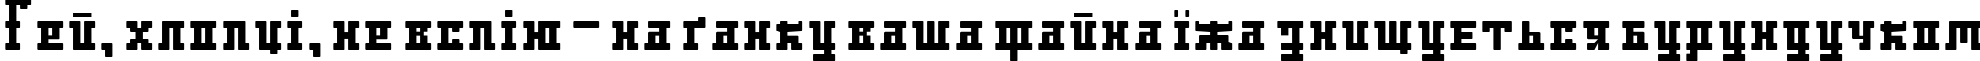 Пример написания шрифтом DS Ayaks Normal текста на украинском